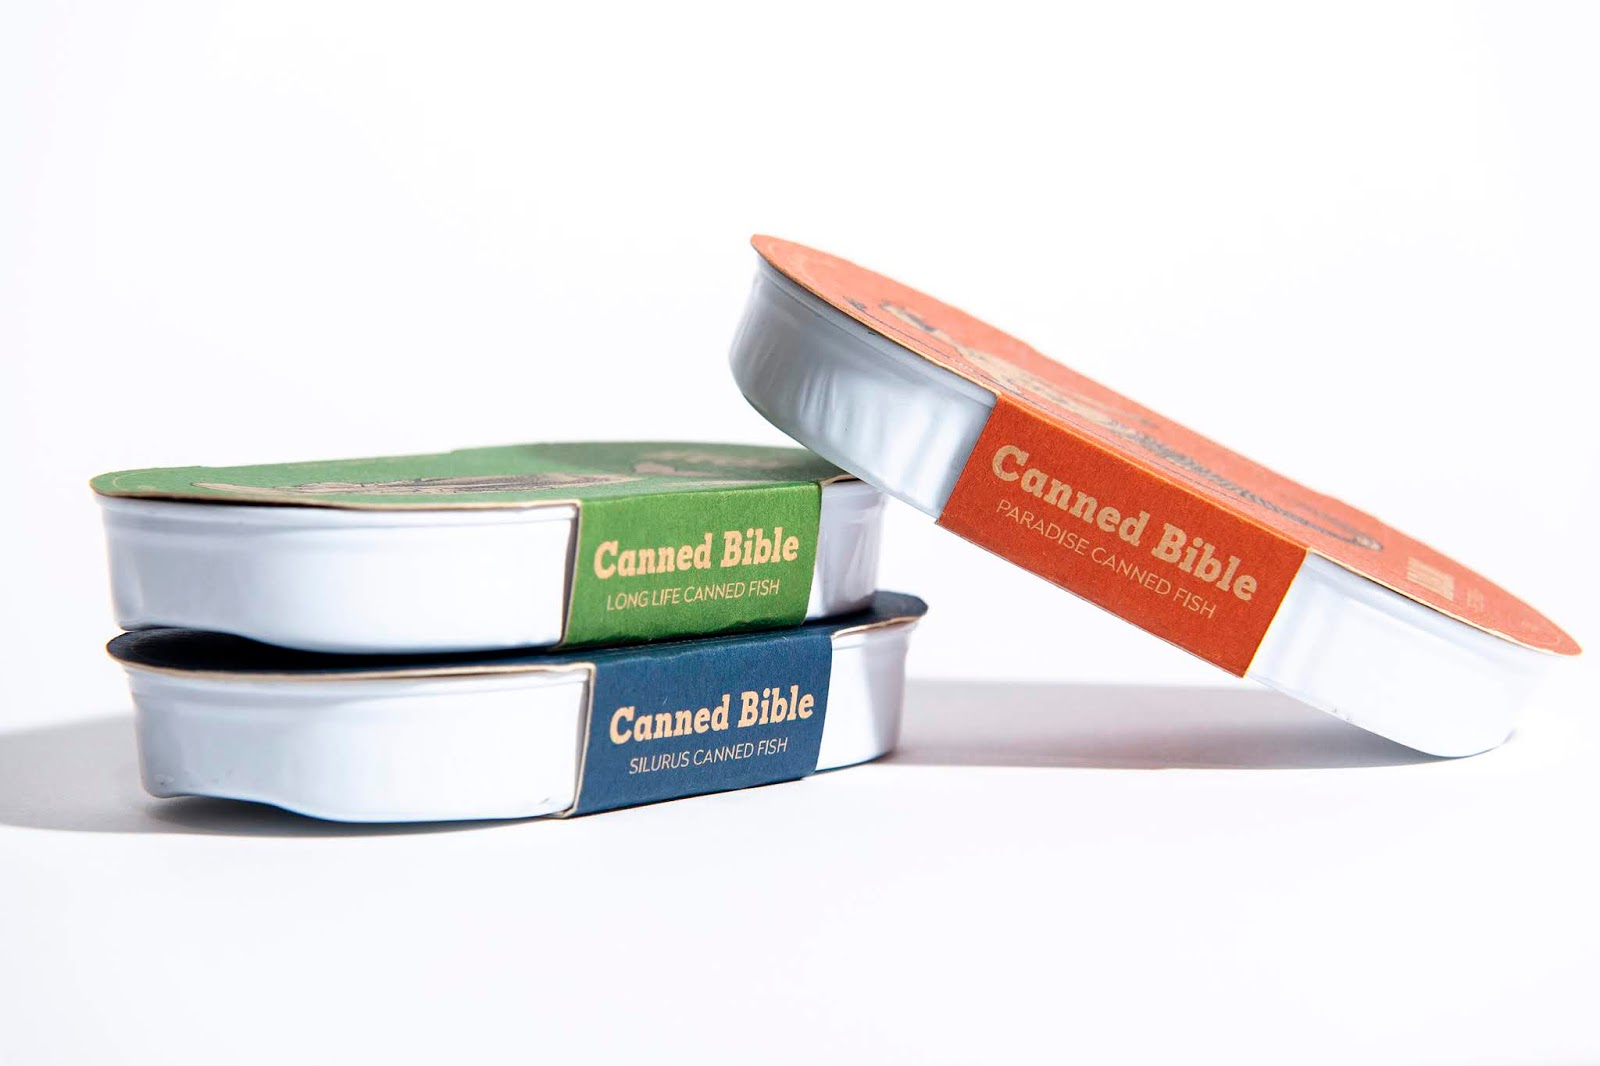 Canned Bible, Zsolt Kolcsar, Дизайн упаковки